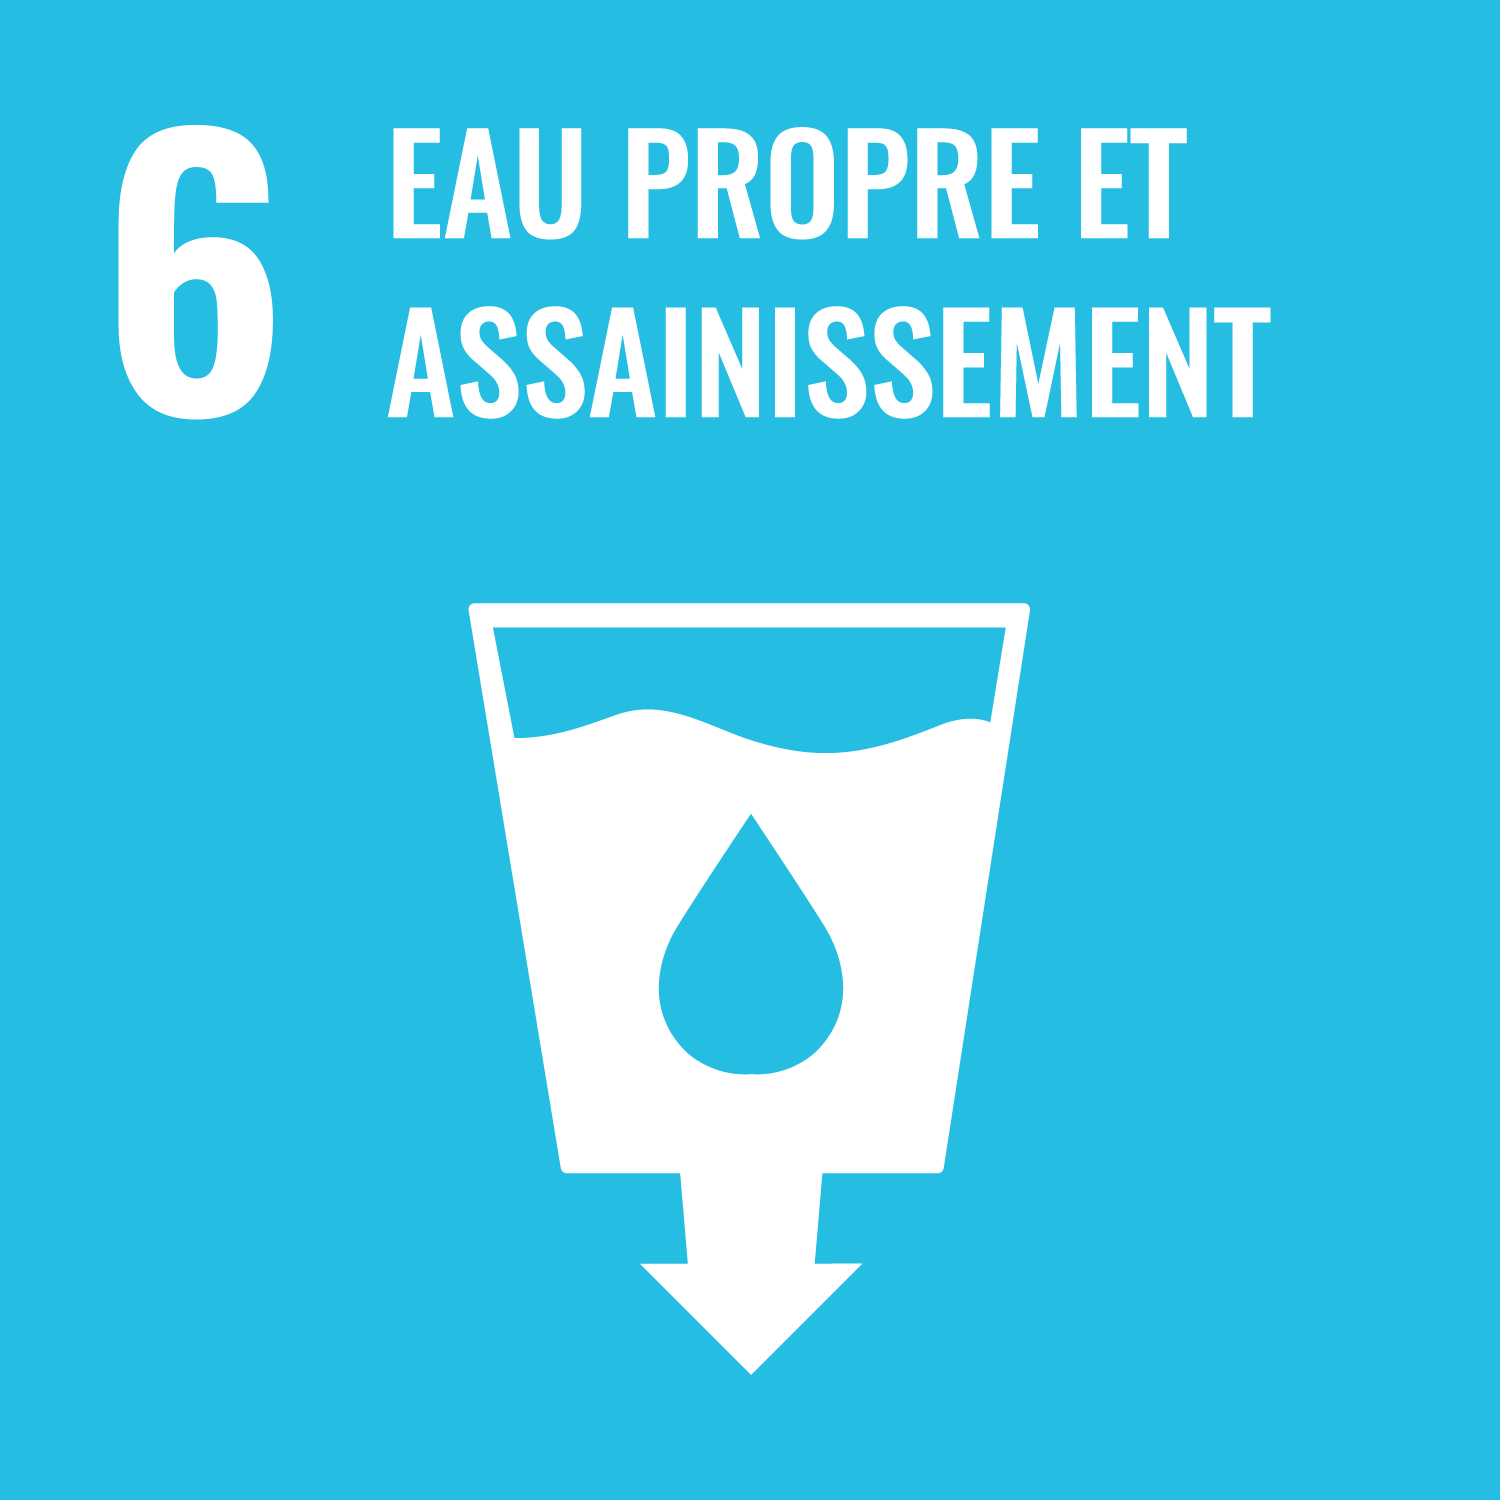 Objectif de développement durable 6: Eau propre et assainissement;